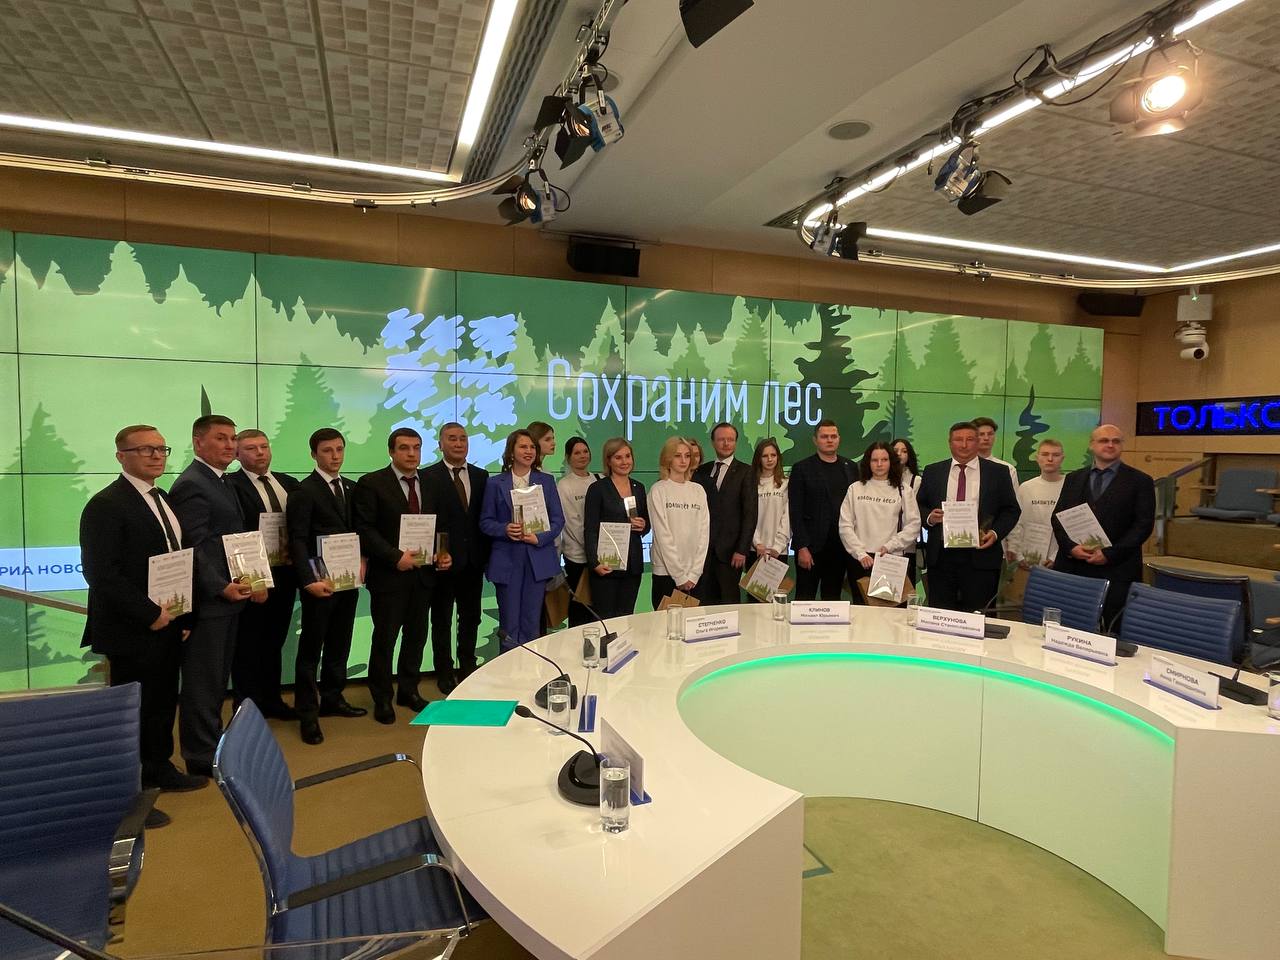 Коми заняла первое место среди всех регионов во Всероссийской акции "Сохраним лес"